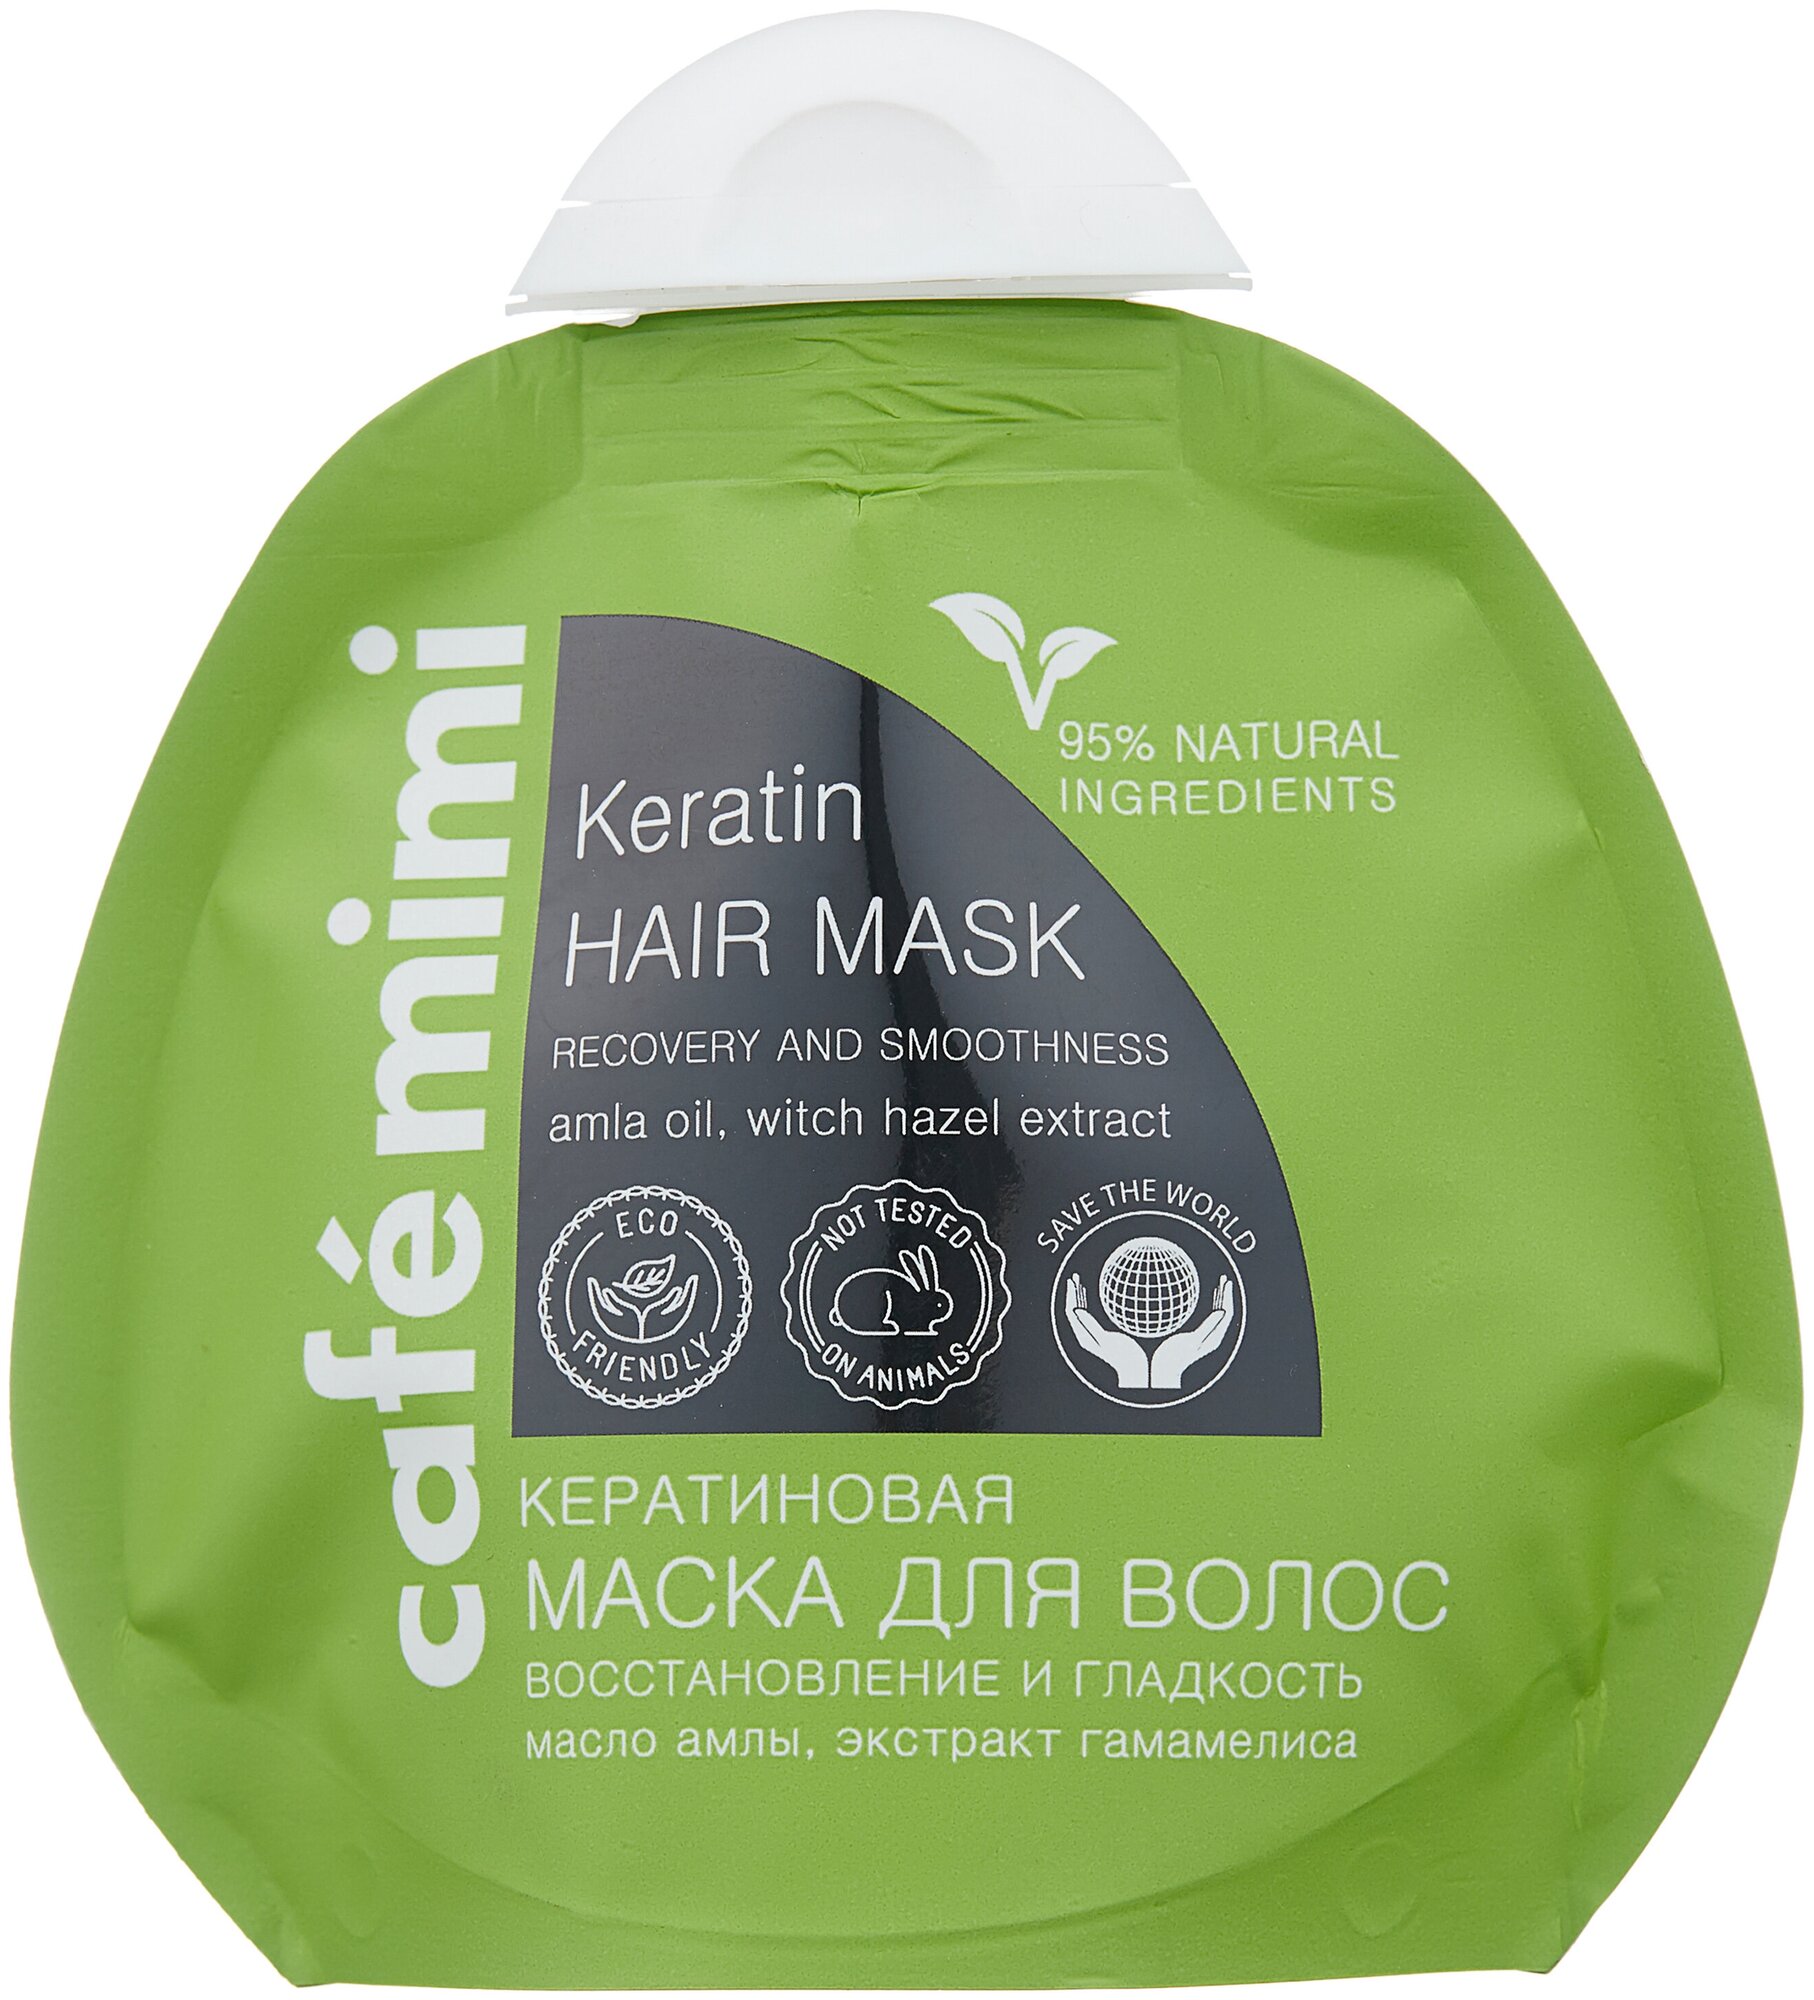 Cafe mimi Кератиновая маска для волос Восстановление и гладкость